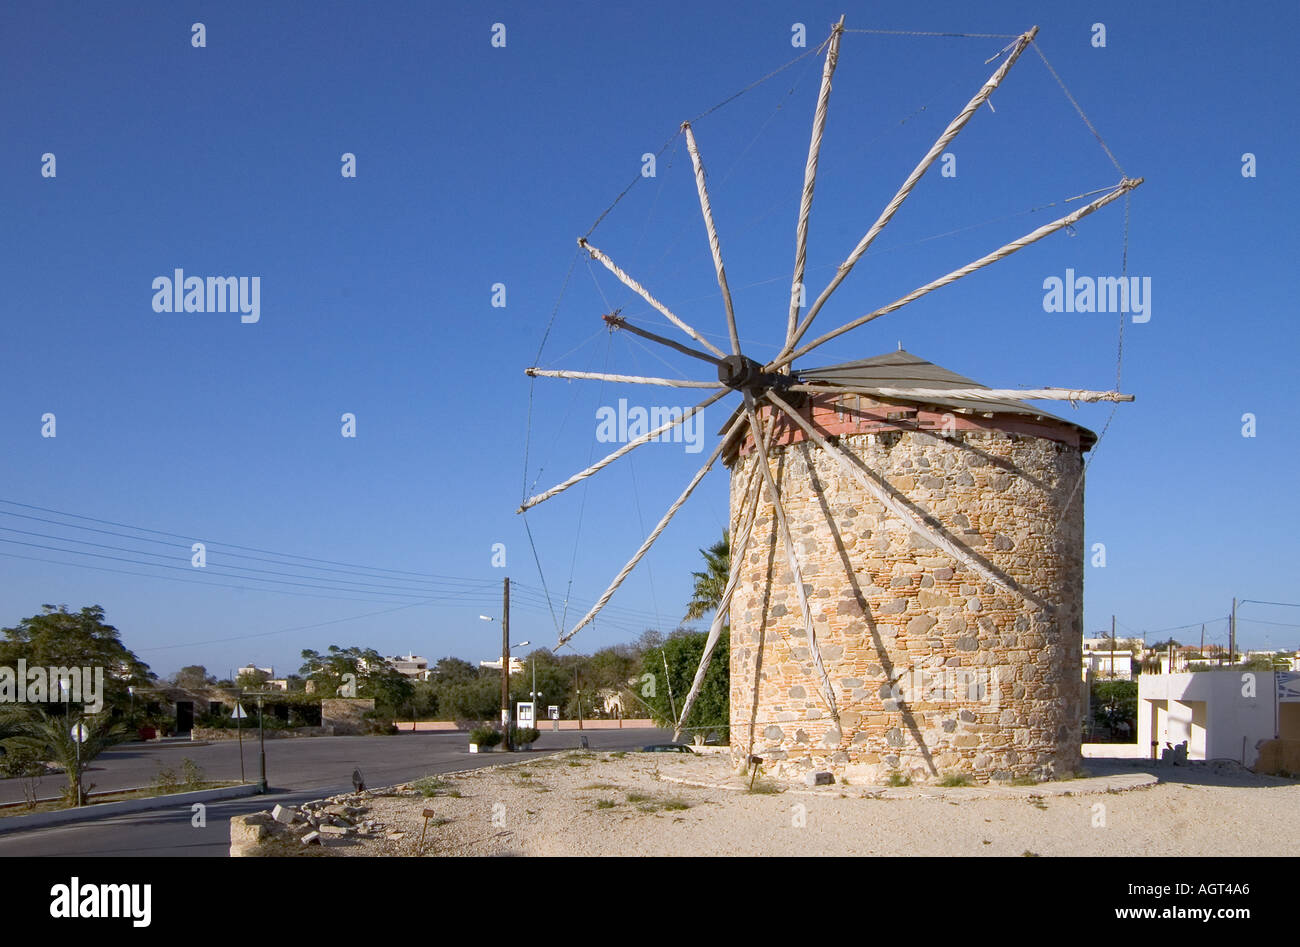 dh Landwirtschaft Windmühle ANTIMACHEIA GRIECHENLAND KOS traditionelle Maismühle Turm mit verstauten Segeln restauriert Stockfoto